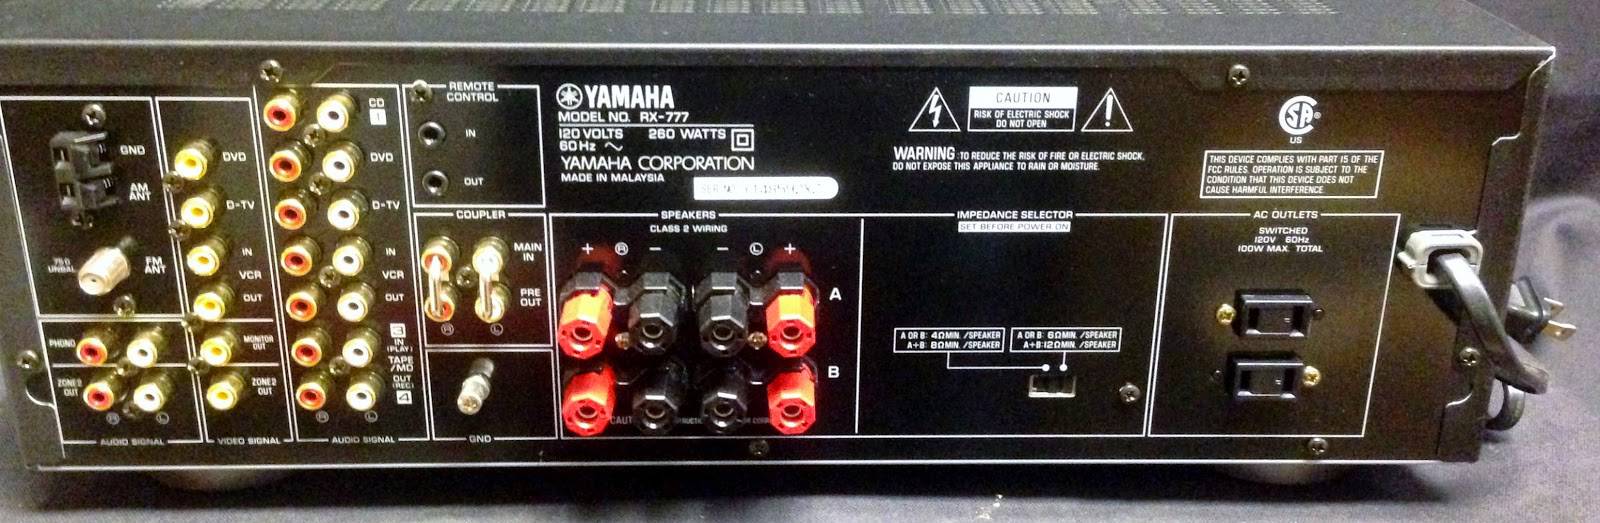 Yamaha RX-777